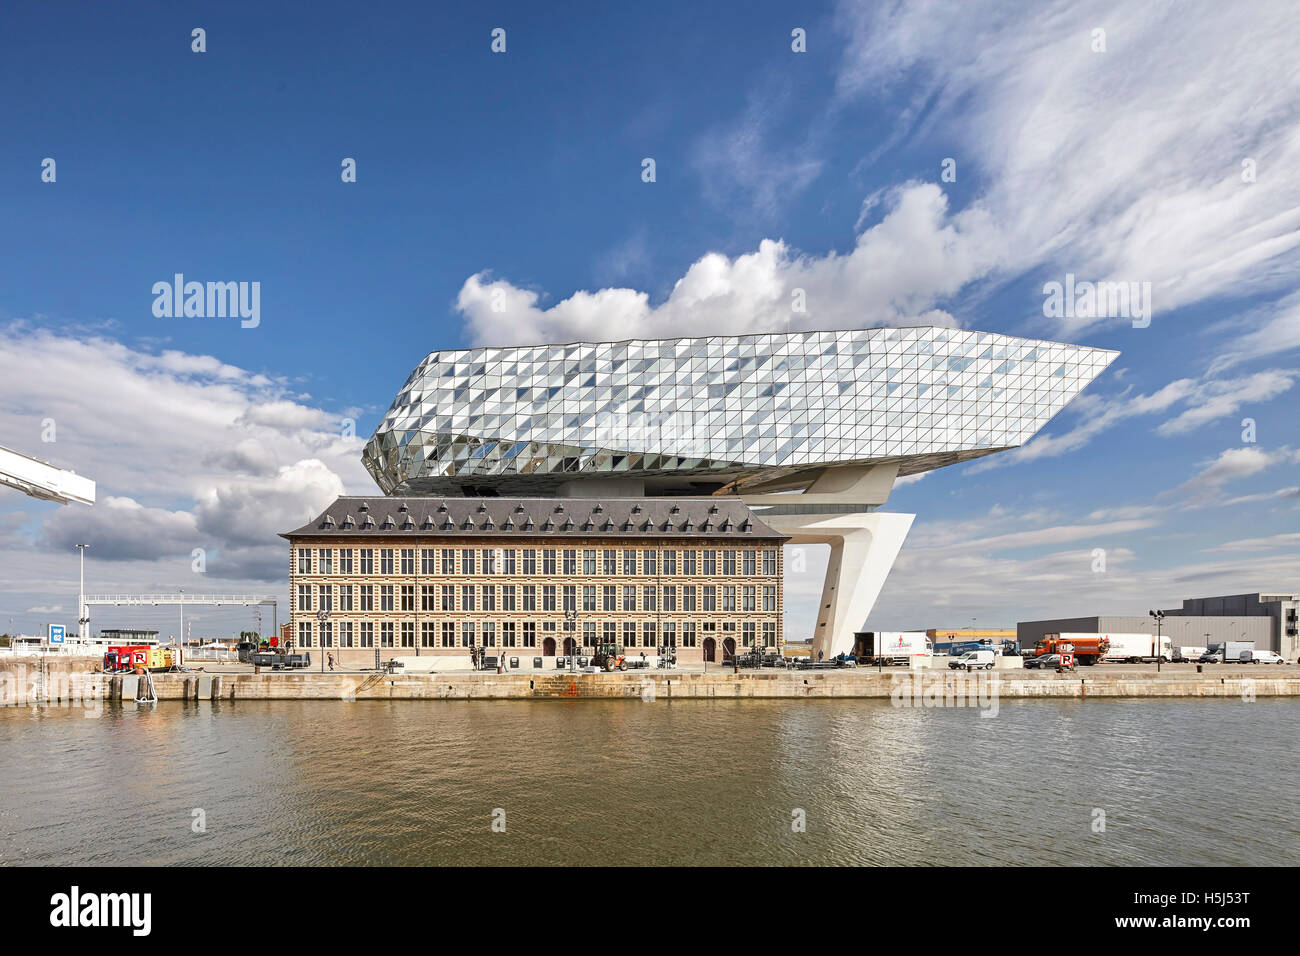 Frontale Ansicht von alt und neu über Wasser. Portweinhaus, Antwerpen, Belgien. Architekt: Zaha Hadid Architects, 2016. Stockfoto